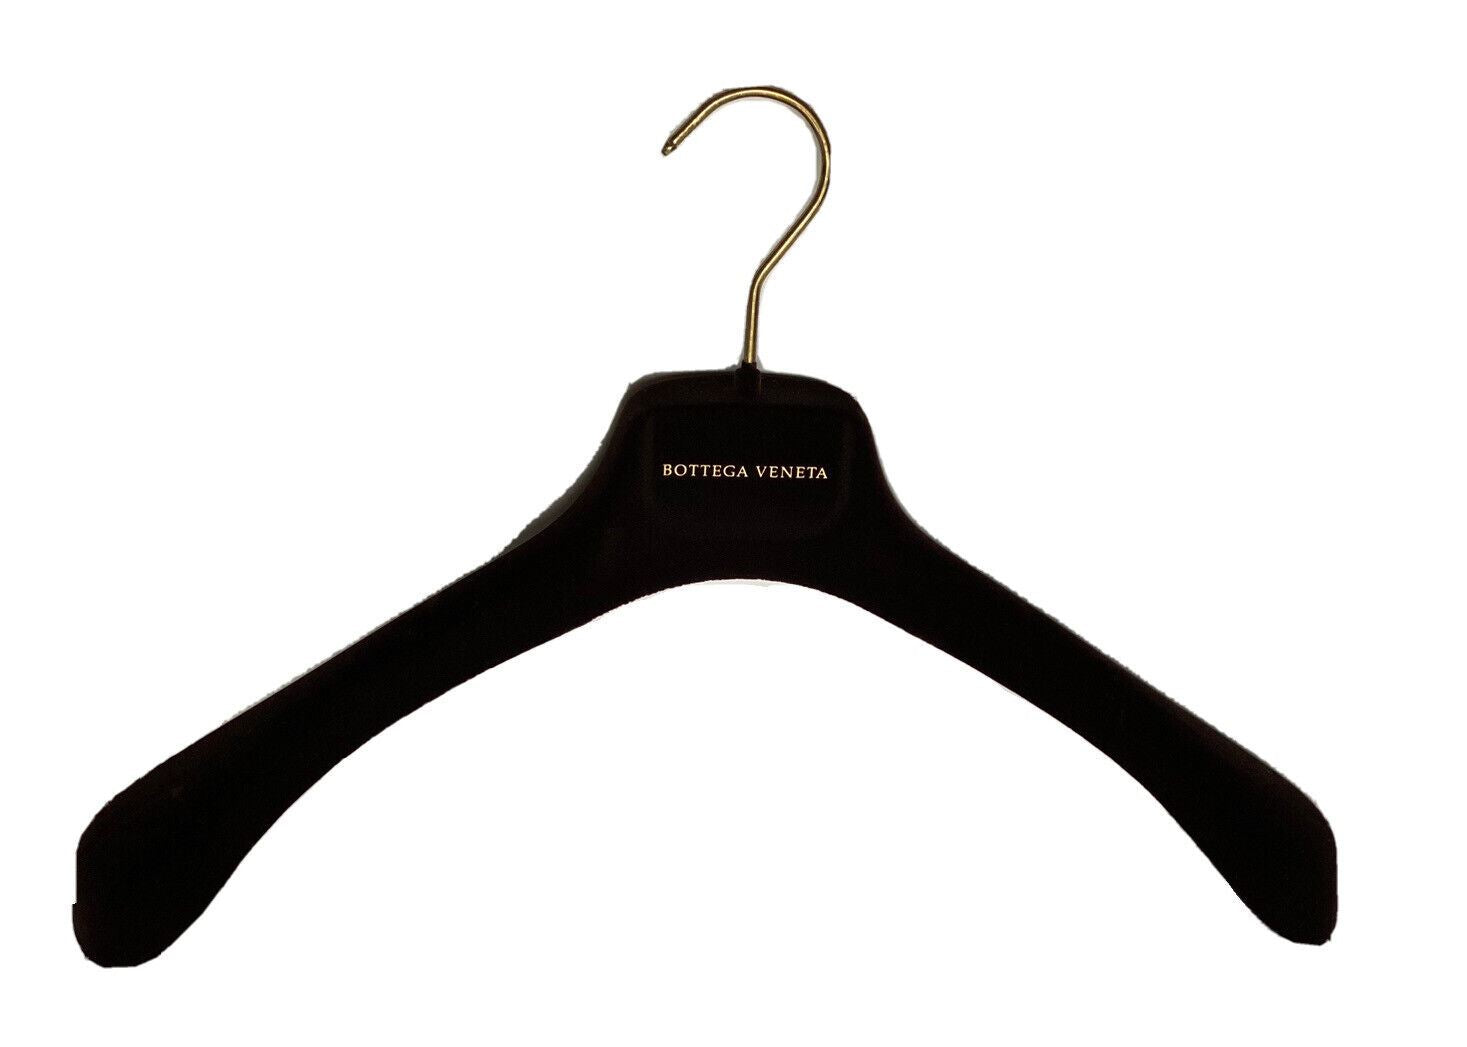 Bottega Veneta Braune Samt-Blazer-Pullover-Kleiderbügel mit goldenen Beschlägen, 17,75 x 7 x 2,5 cm 